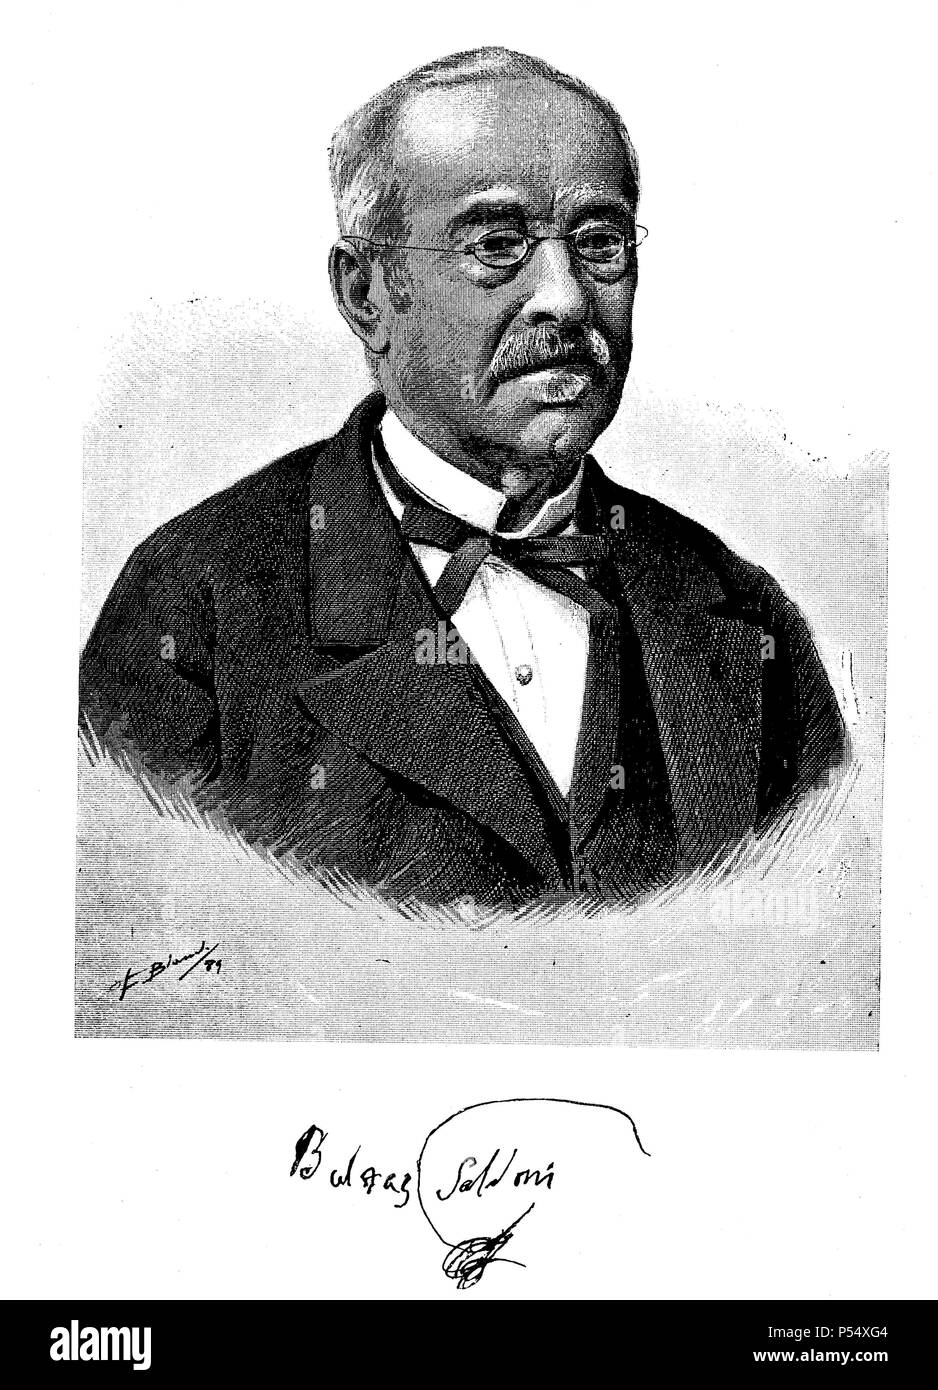 Baltasar Simón Saldoni y Remendo (1807-1889). Músico y musicógrafo catalán. Grabado de 1889. Stock Photo